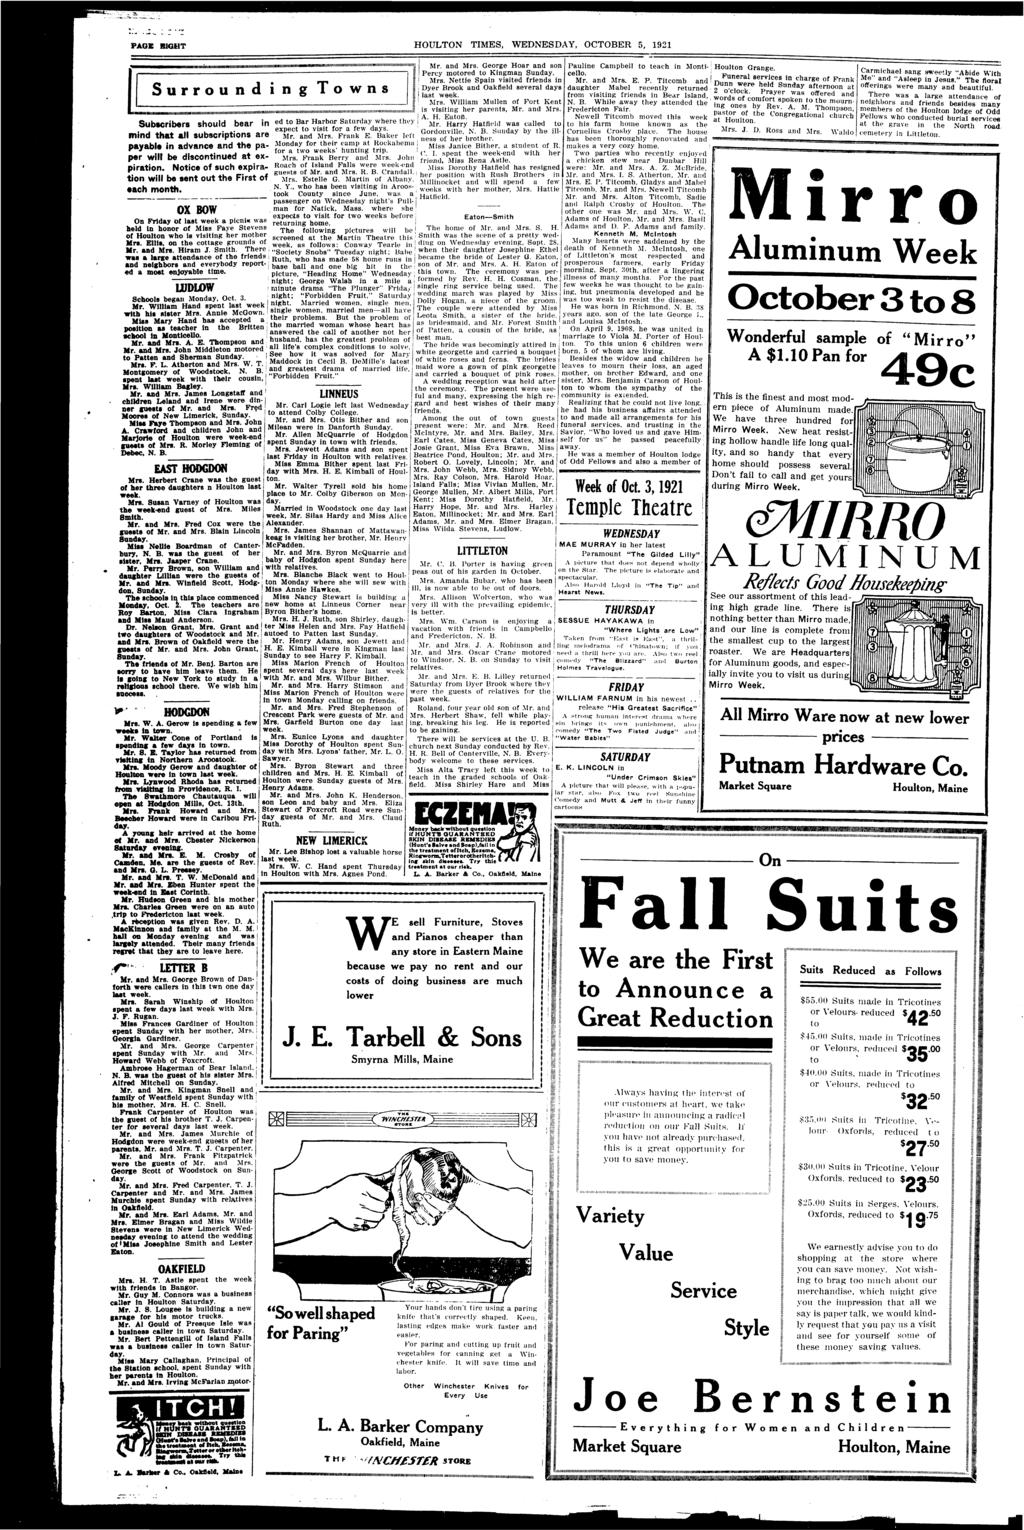 PAGE BIGHT HOULTON TIMES, WEDNESDAY, OCTOBER 5, 1921 IMNIIIUIIIMlMMIllHHUHHIHHIIINIIIIMlHIIIIIIIIIIIlIBBIHIMIIMIMIMMBMMIItltUlWHIIIHIIIIHnllllltlllllllHIIIIHIIIIIIItHHIIHIIIIIIHIIIty I Mr. and Mrs.